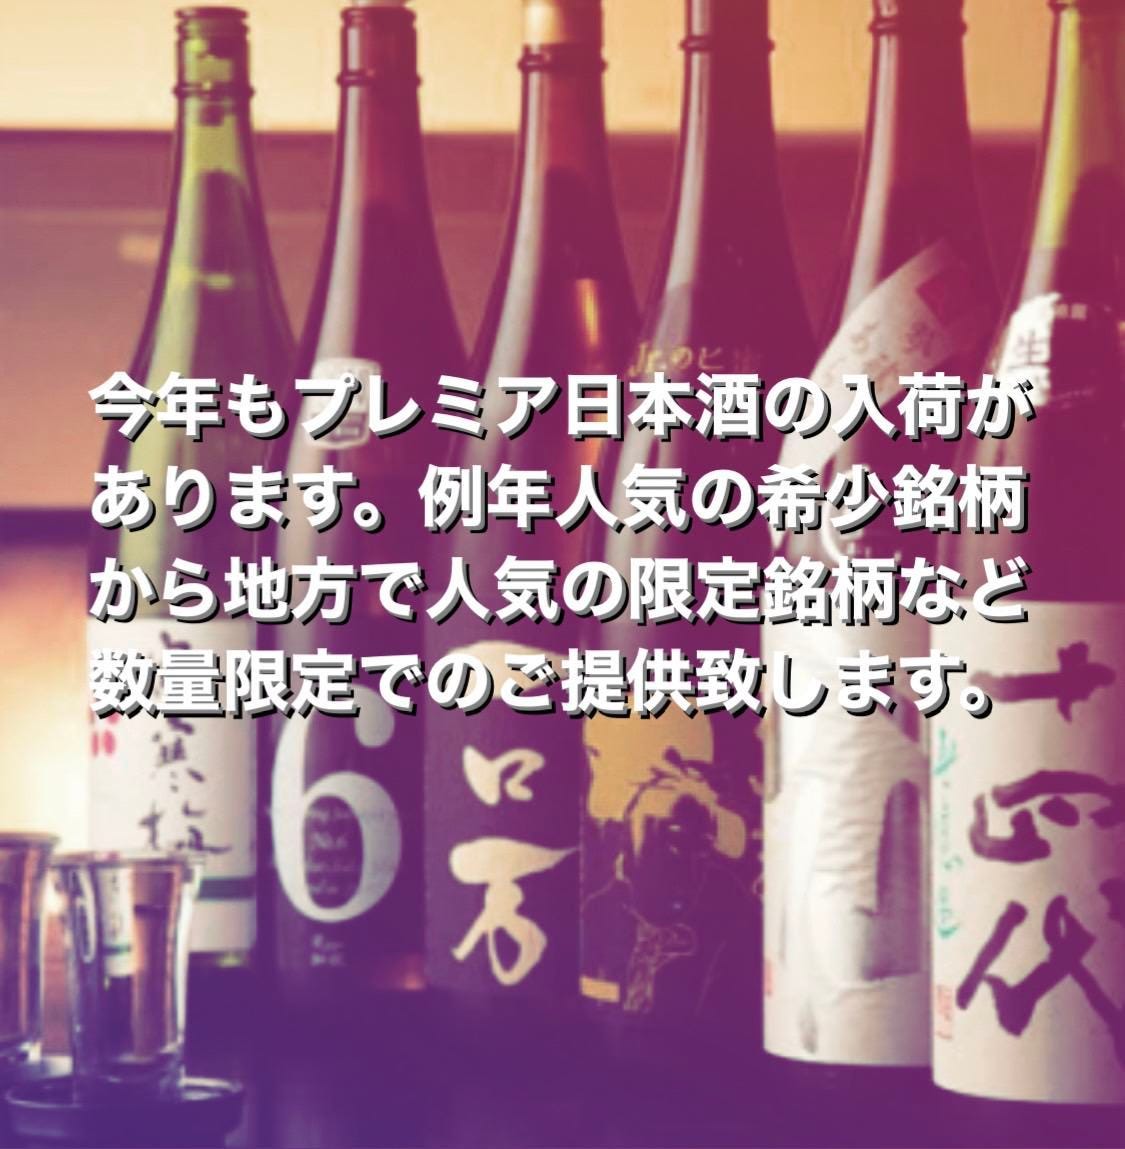 プレミアム日本酒が入荷しました。